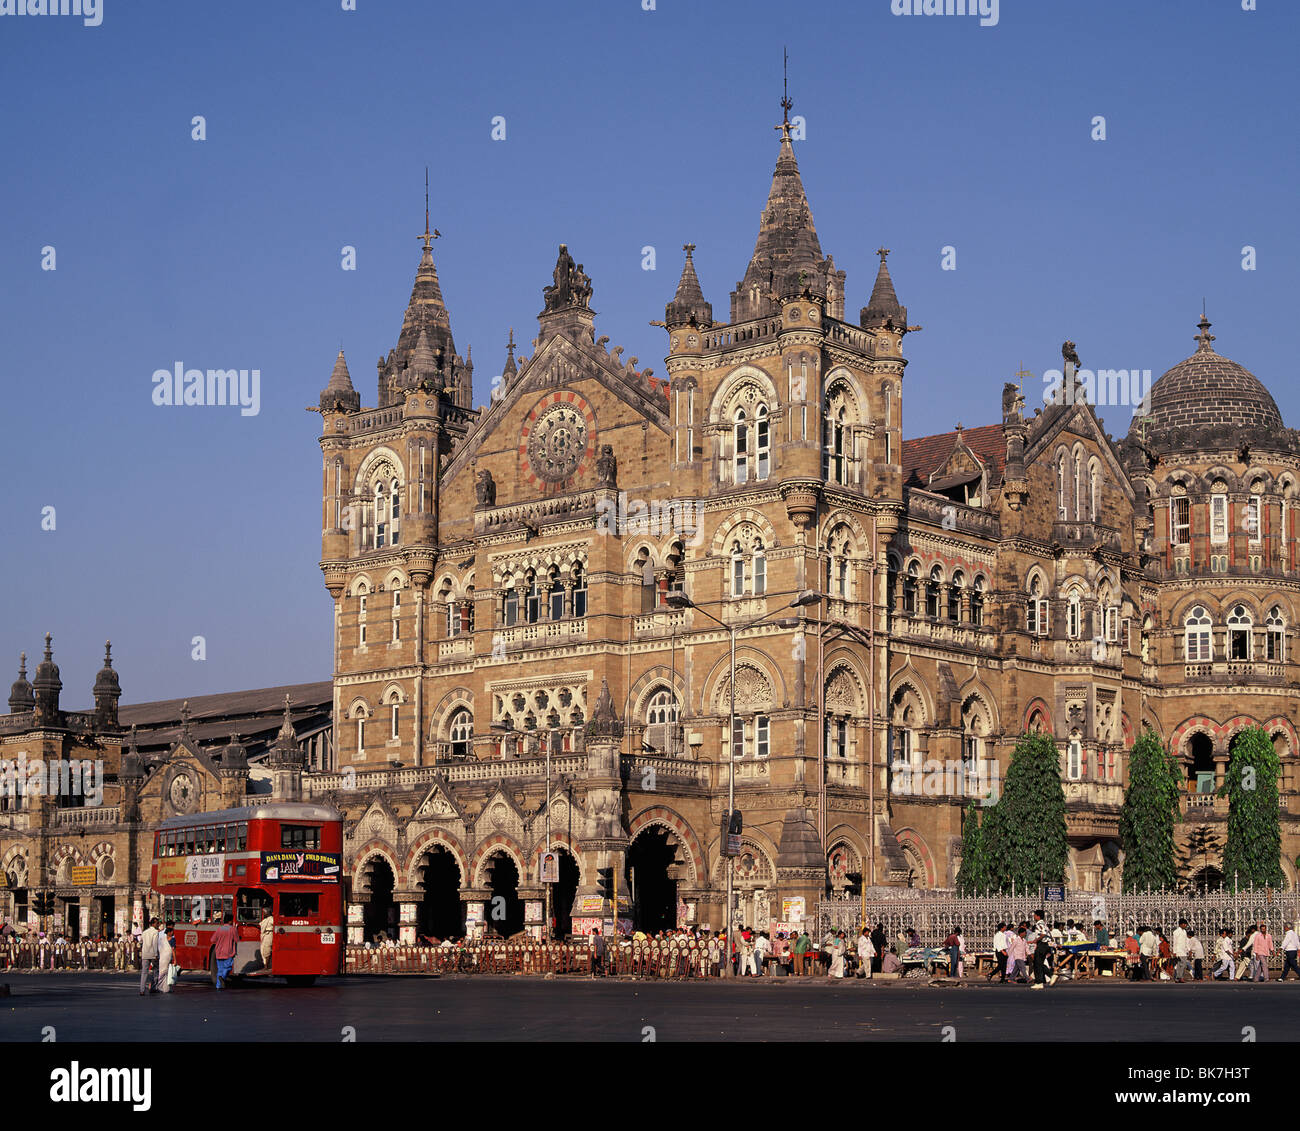 Mumbai (Stazione Ferroviaria Victoria Terminus) (Chhatrapati Shivaji), il Sito Patrimonio Mondiale dell'UNESCO, India, Asia Foto Stock